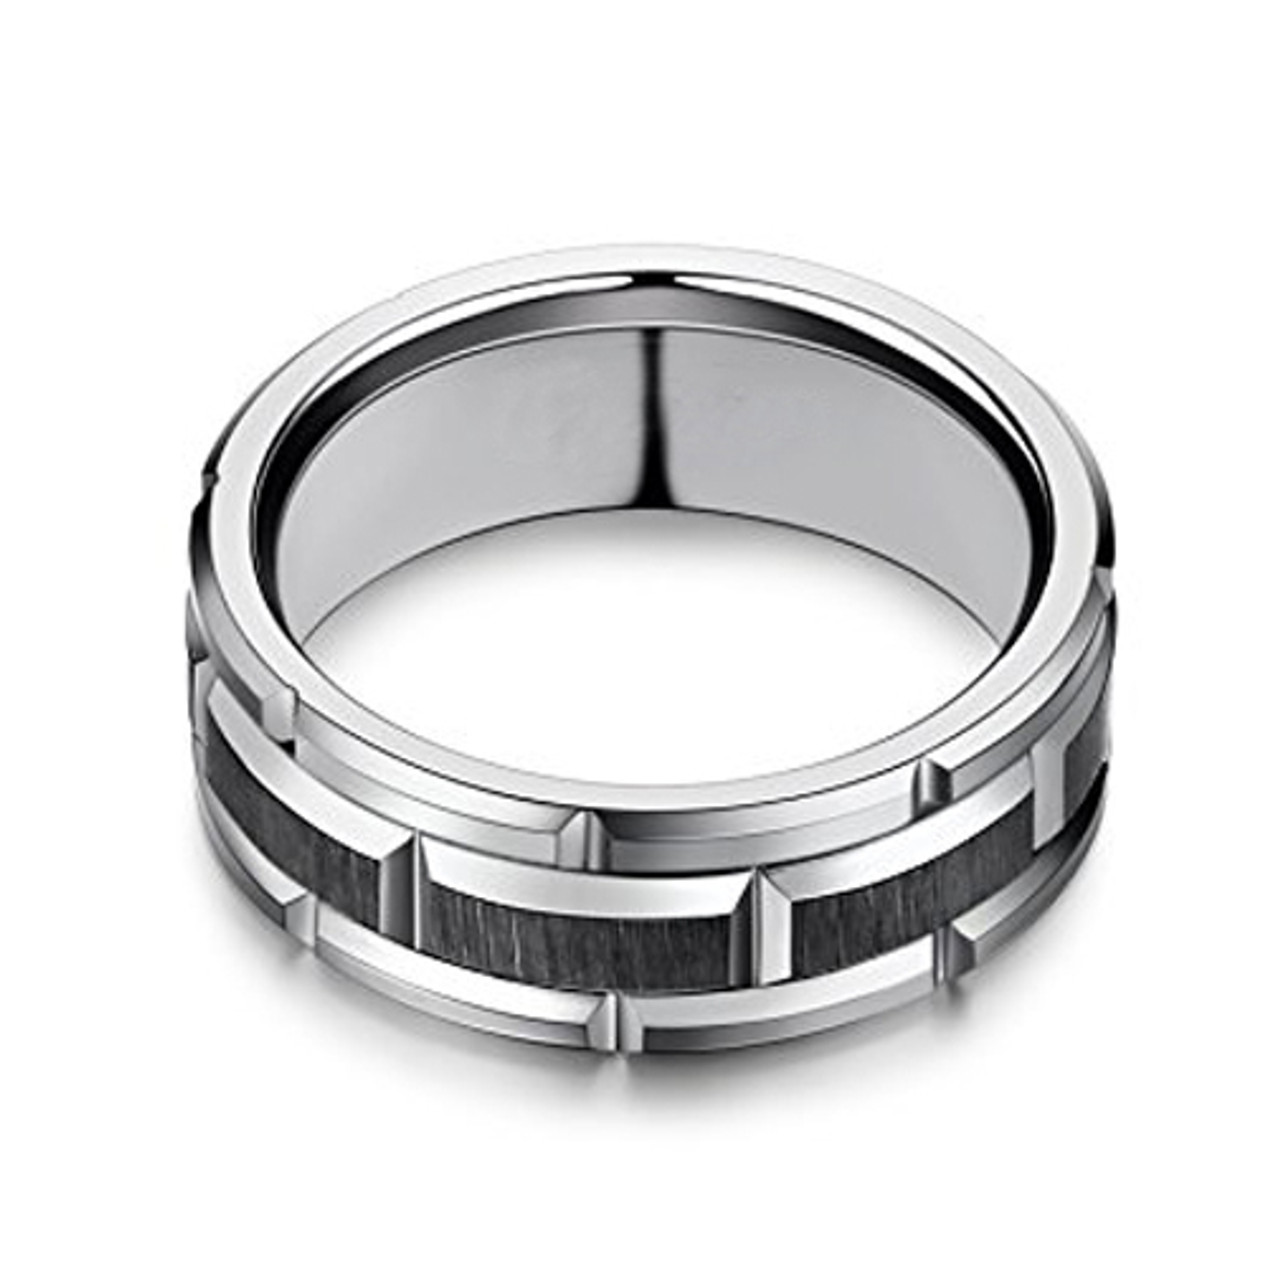 Men's Tungsten Wedding Band (8mm). Silver Tone Brick Pattern Tungsten Wedding Band Ring Comfort Fit